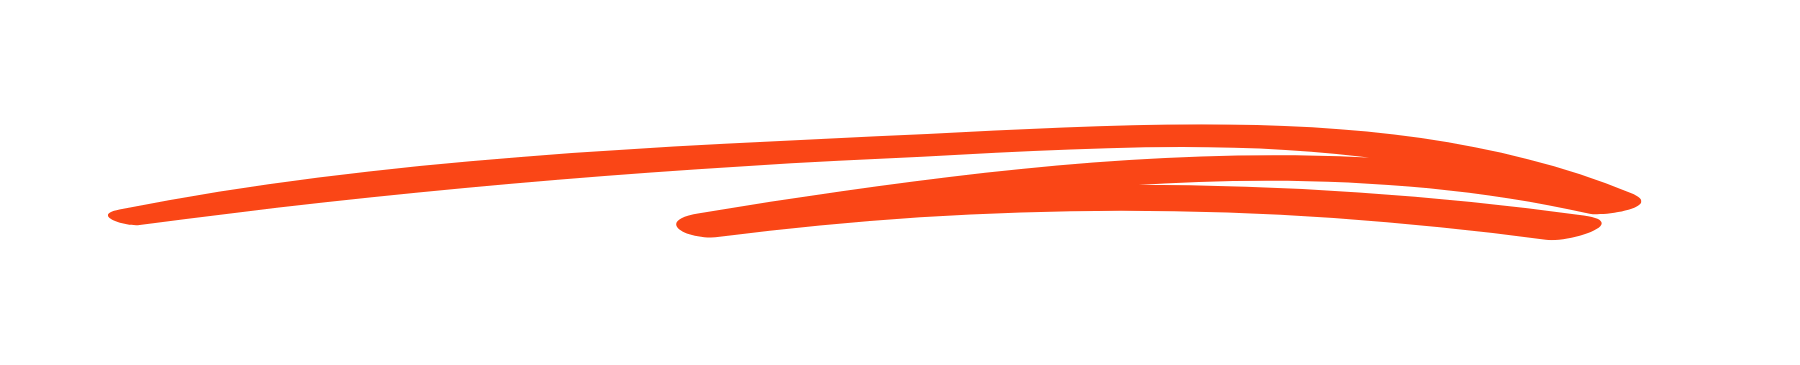 CPA Social - sketch underline - orange